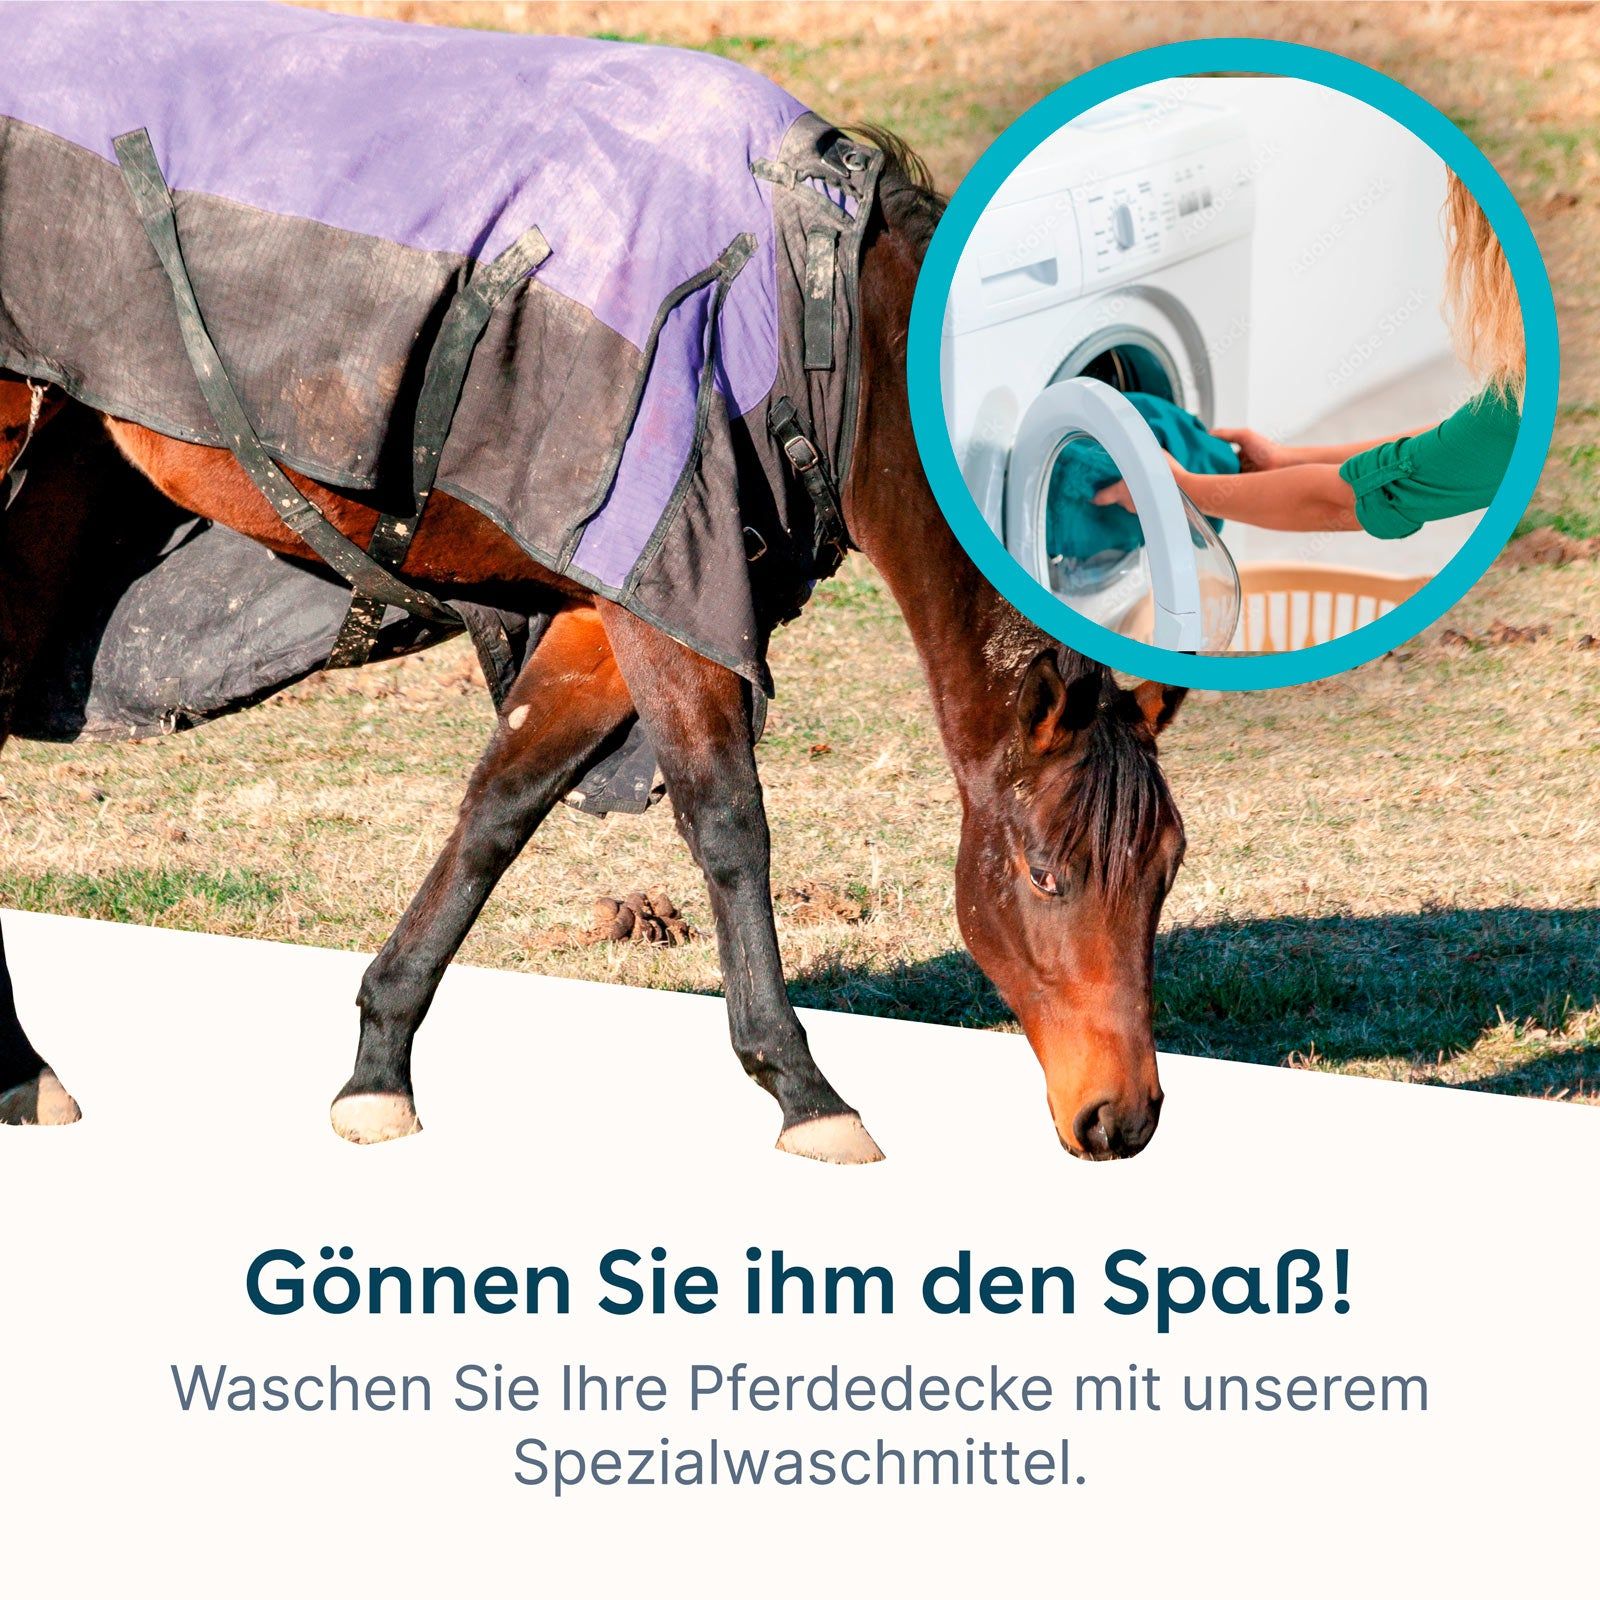 eco:fy Pferdedecken-Waschmittel